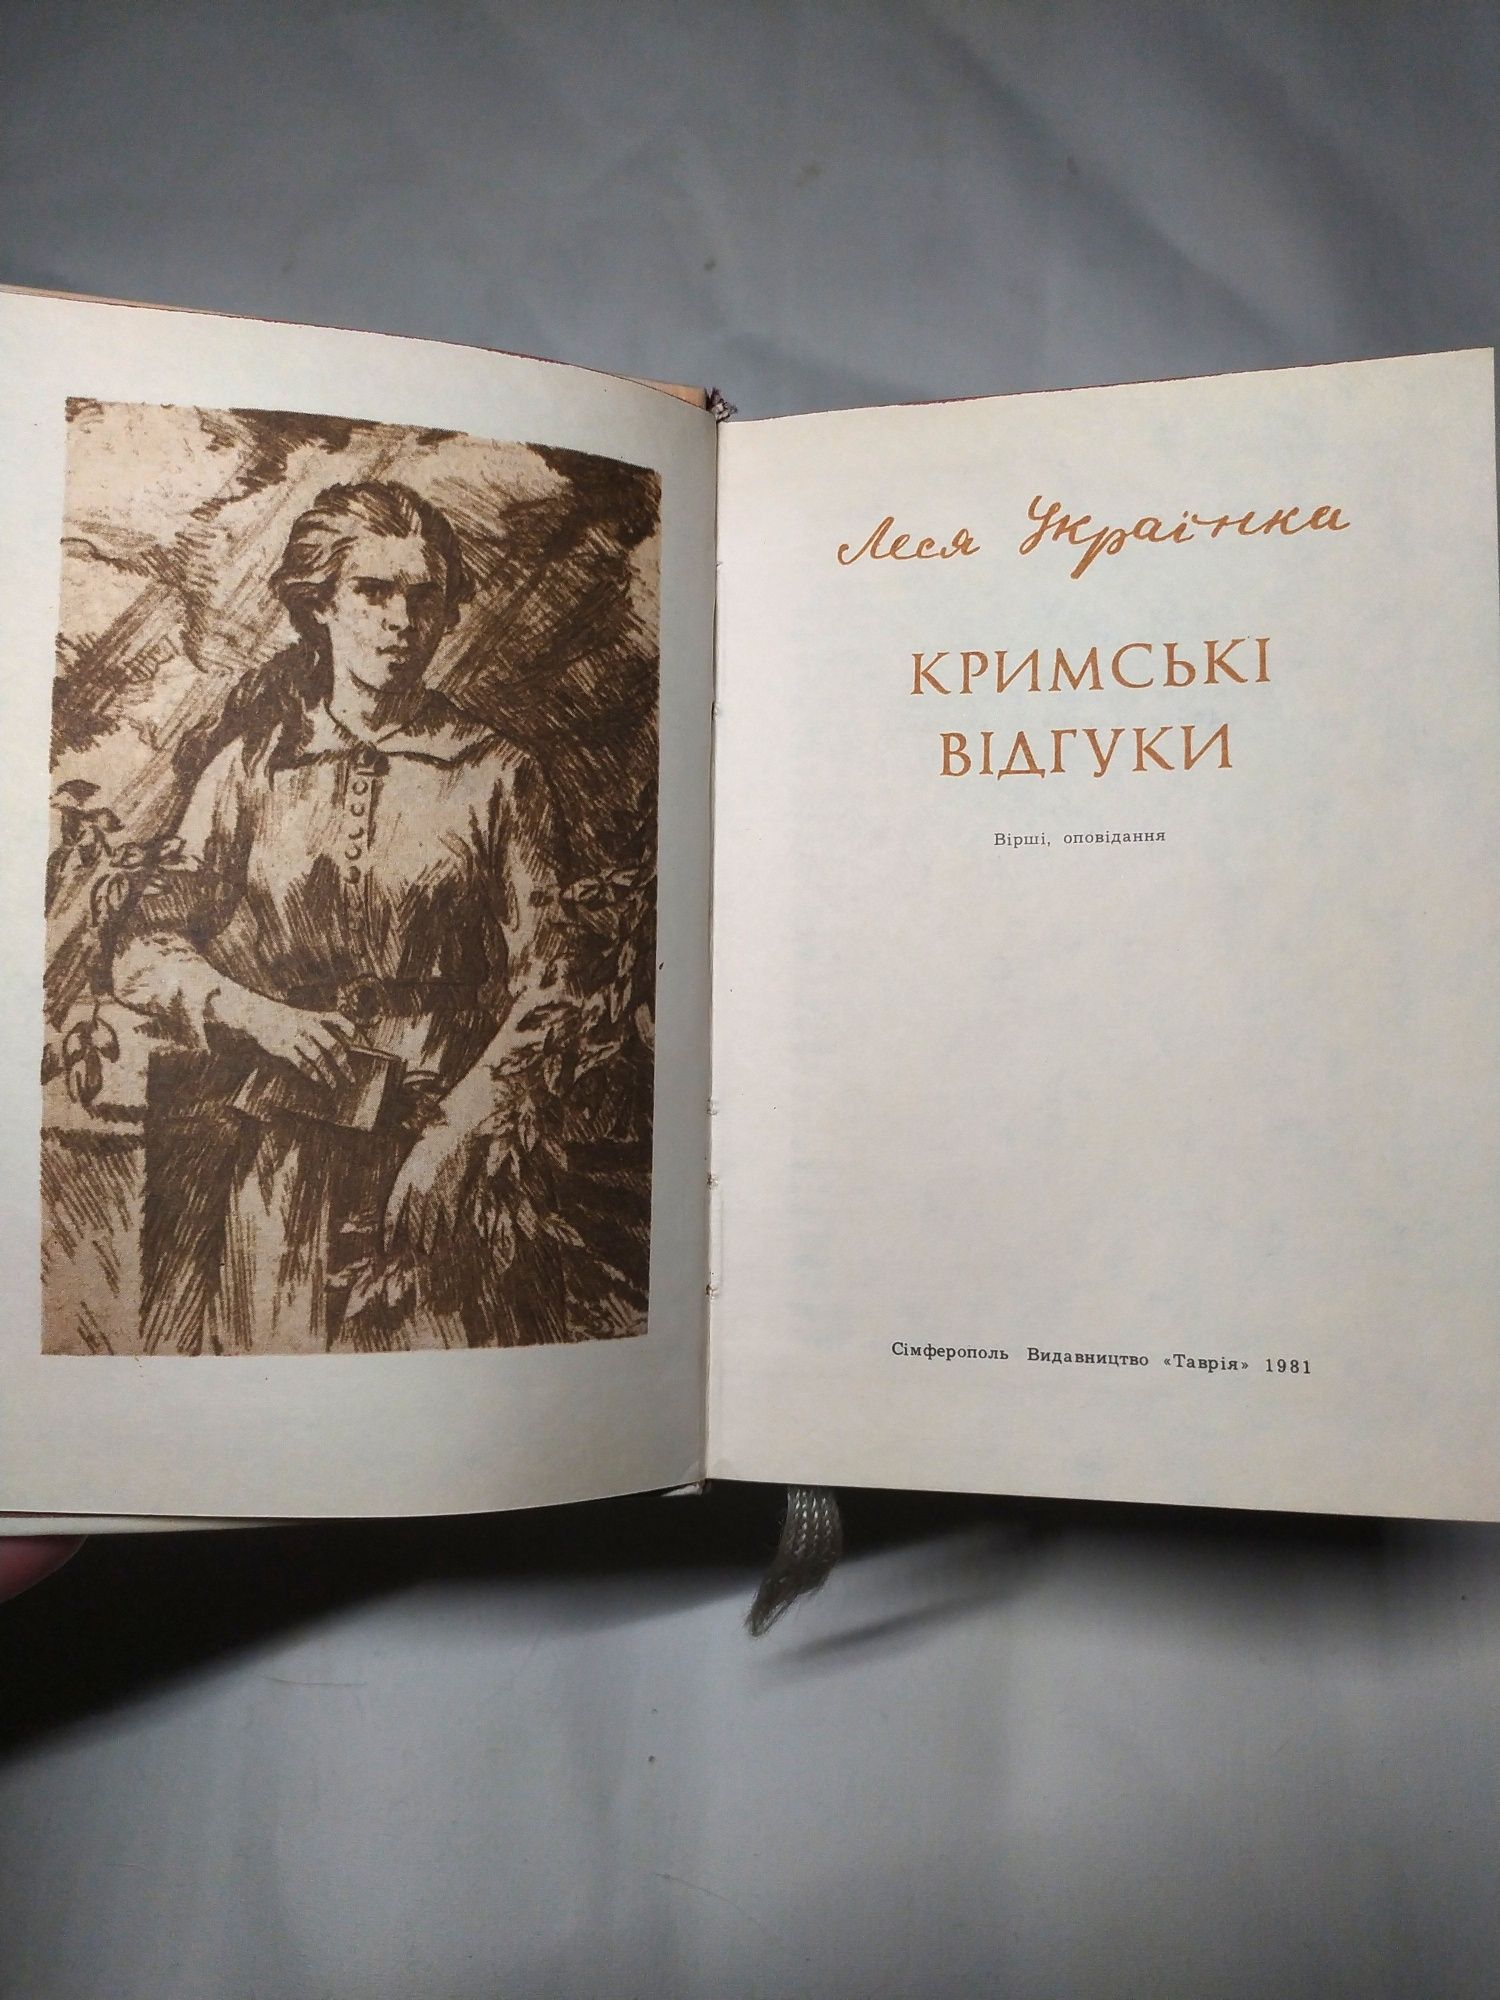 Леся Українка Кримські відгуки Вірші, оповідання